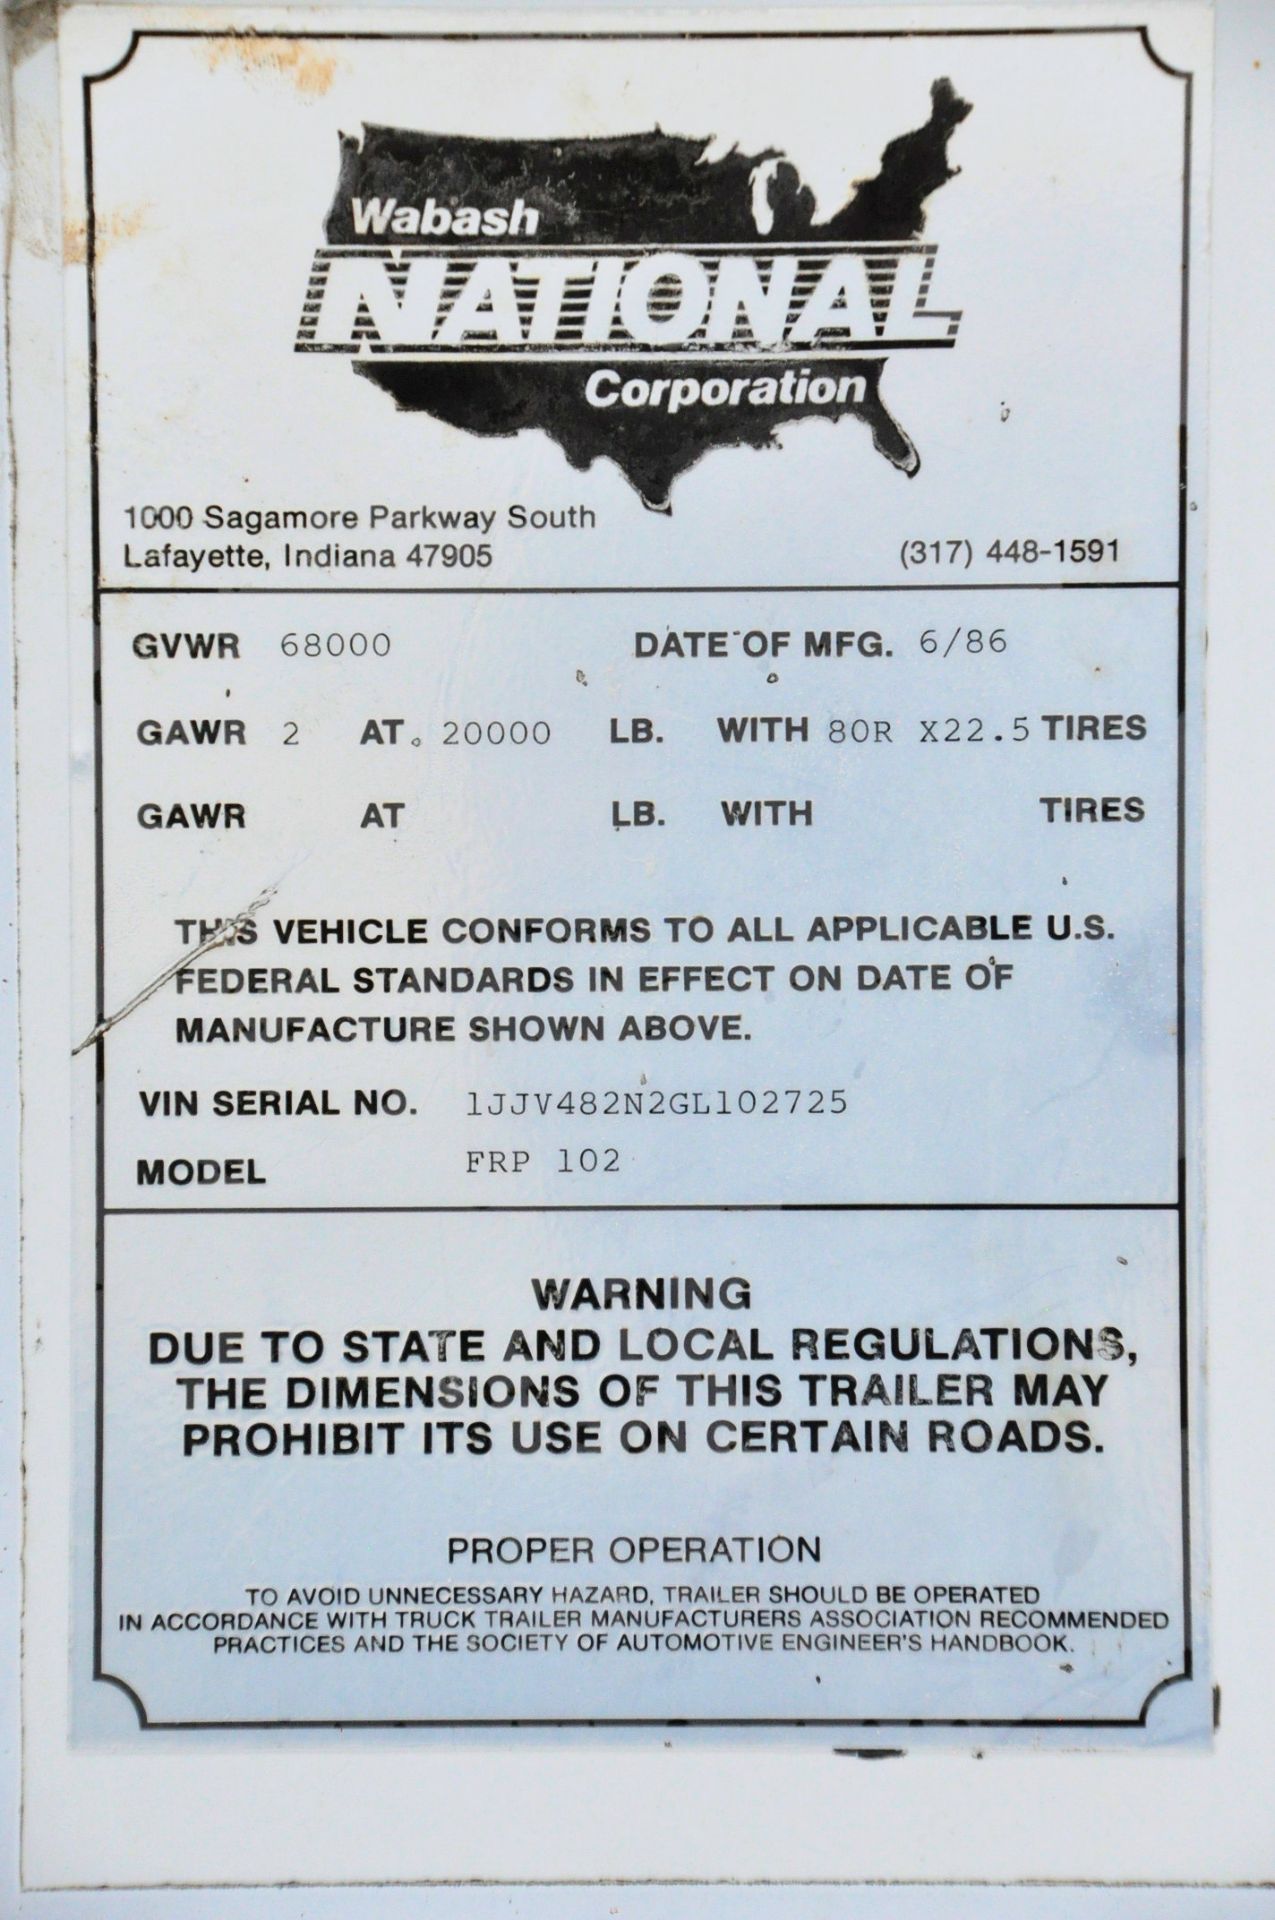 1986 Wabash National Model FRP 102, 48' Tandem Axle Van Trailer, VIN S/n 1JJV482N2GL102725, ( - Image 3 of 3